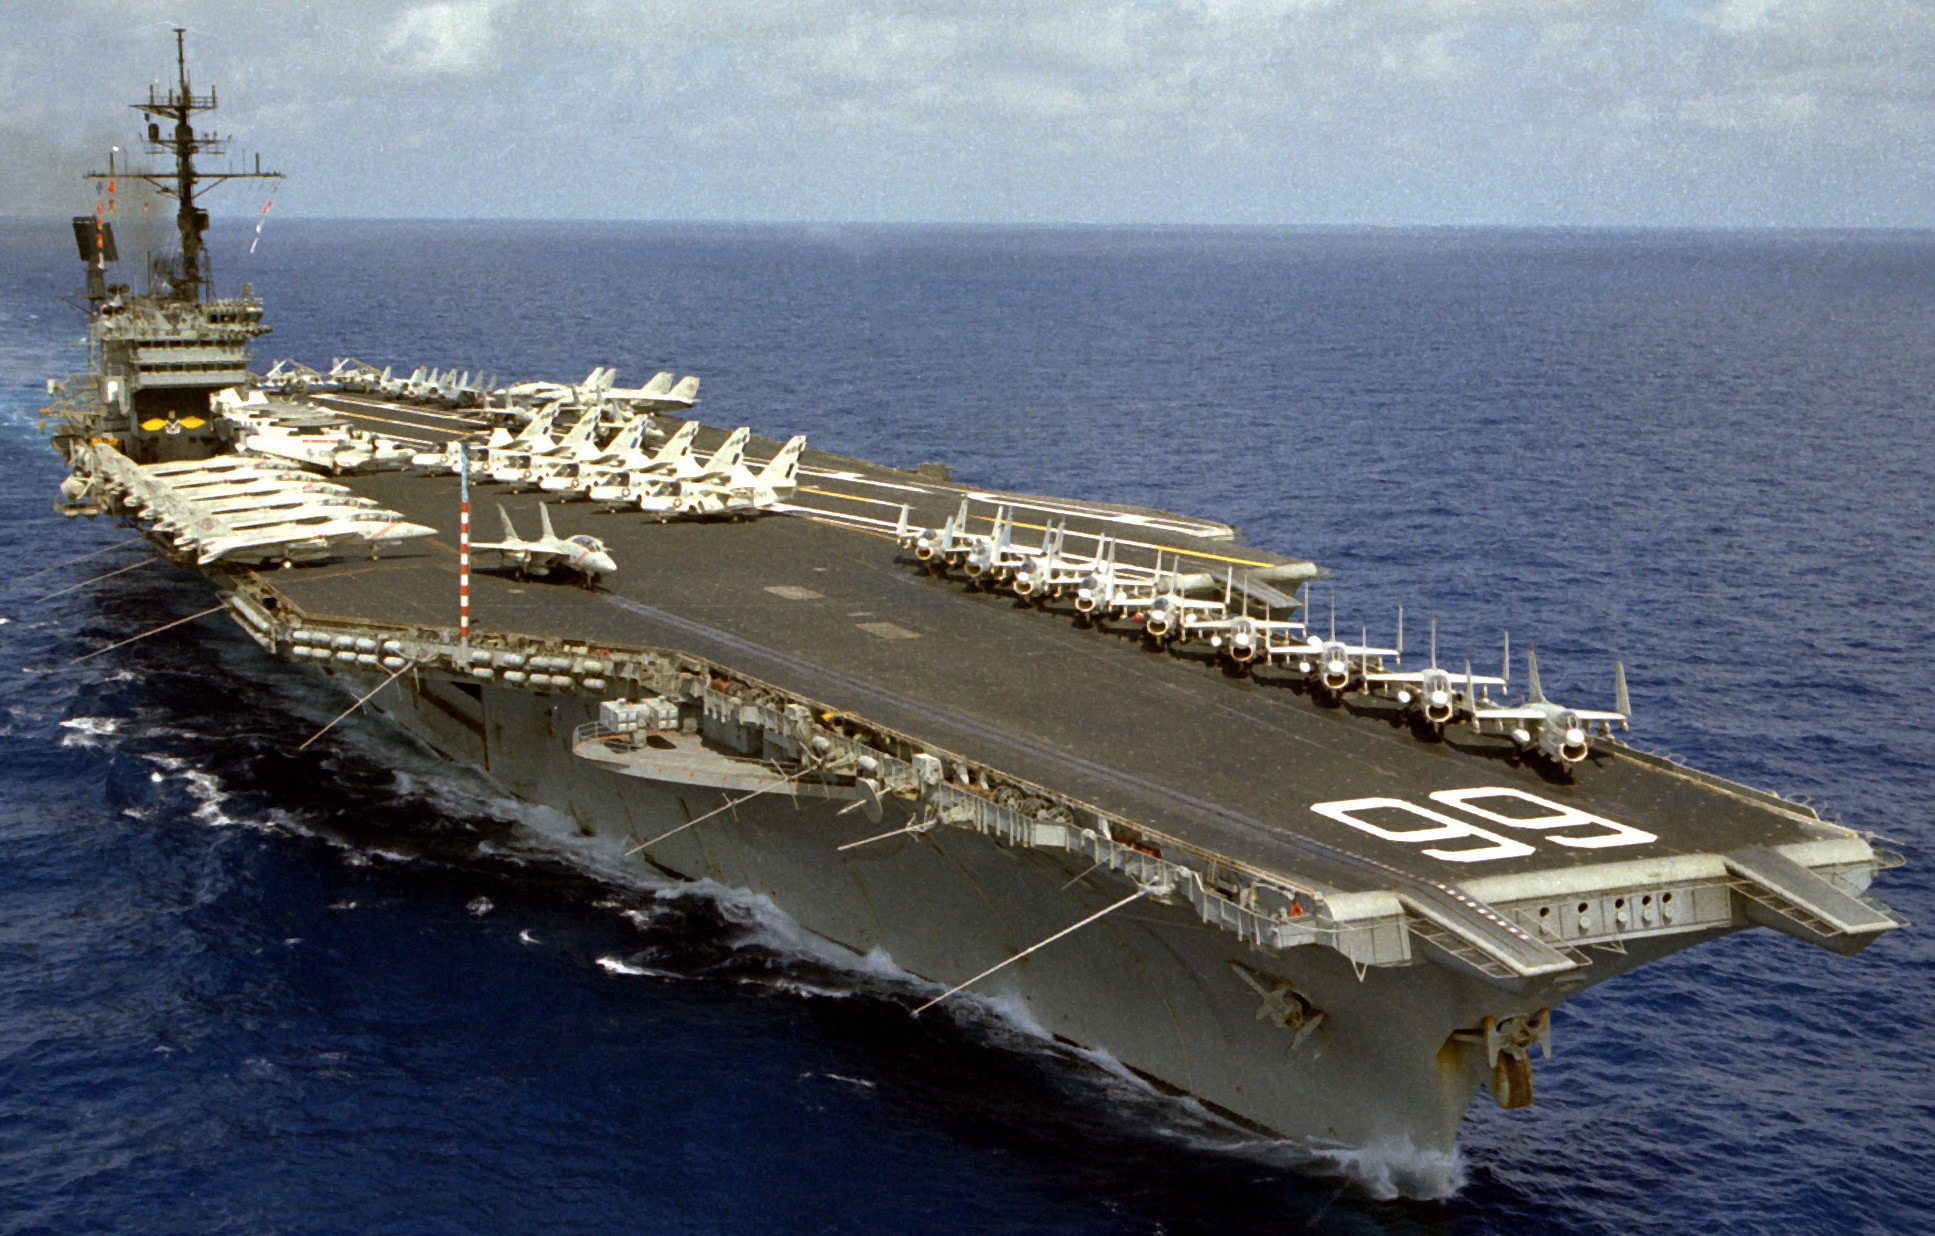 cv-66 uss america kitty hawk class aircraft carrier air wing cvw-1 us navy 63